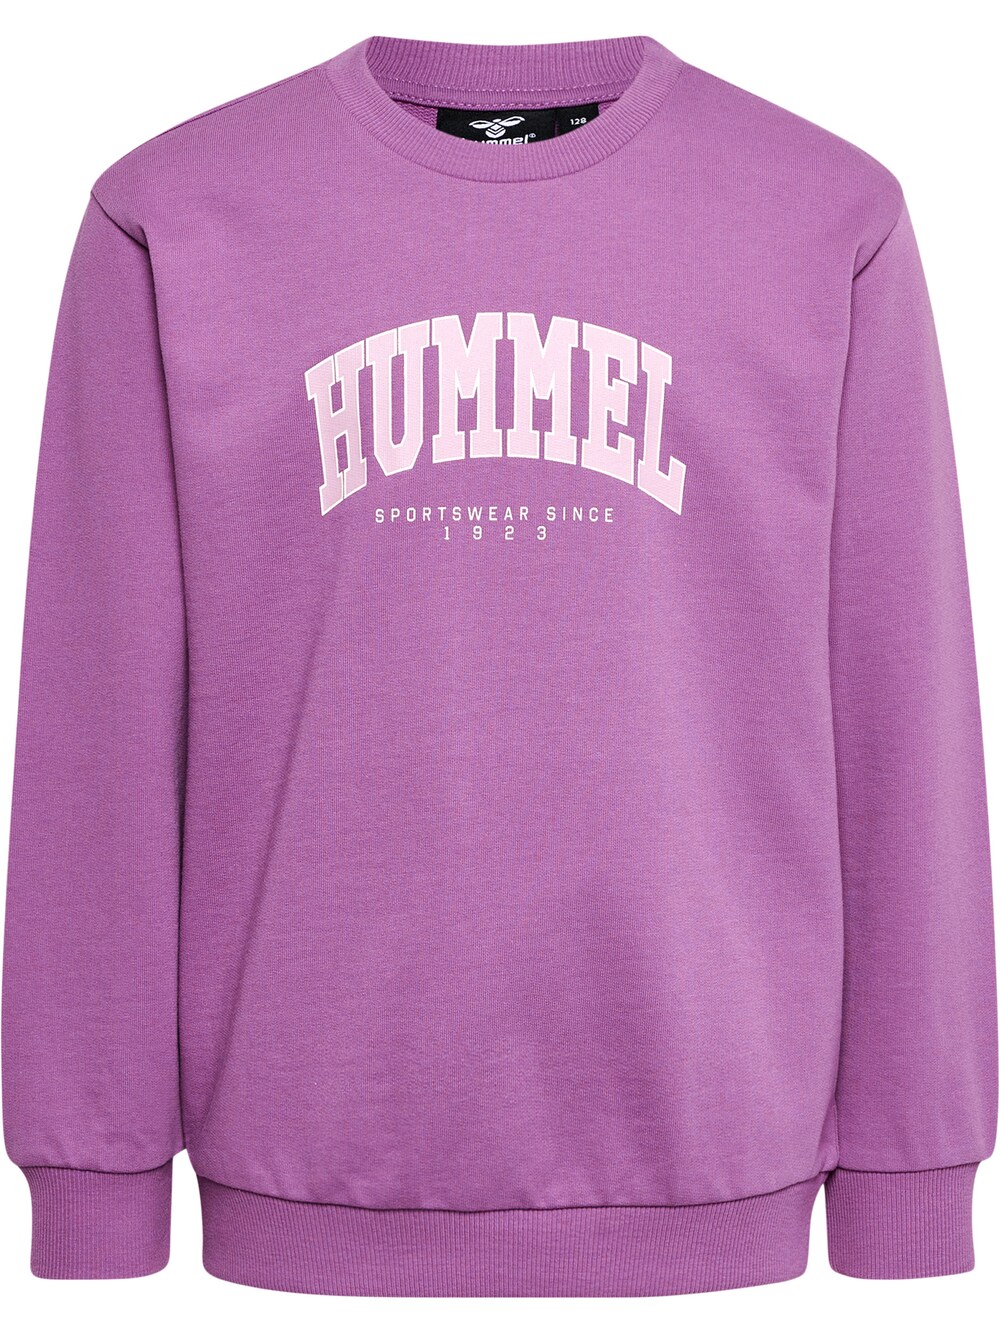 Спортивная толстовка Hummel FAST, фиолетовый